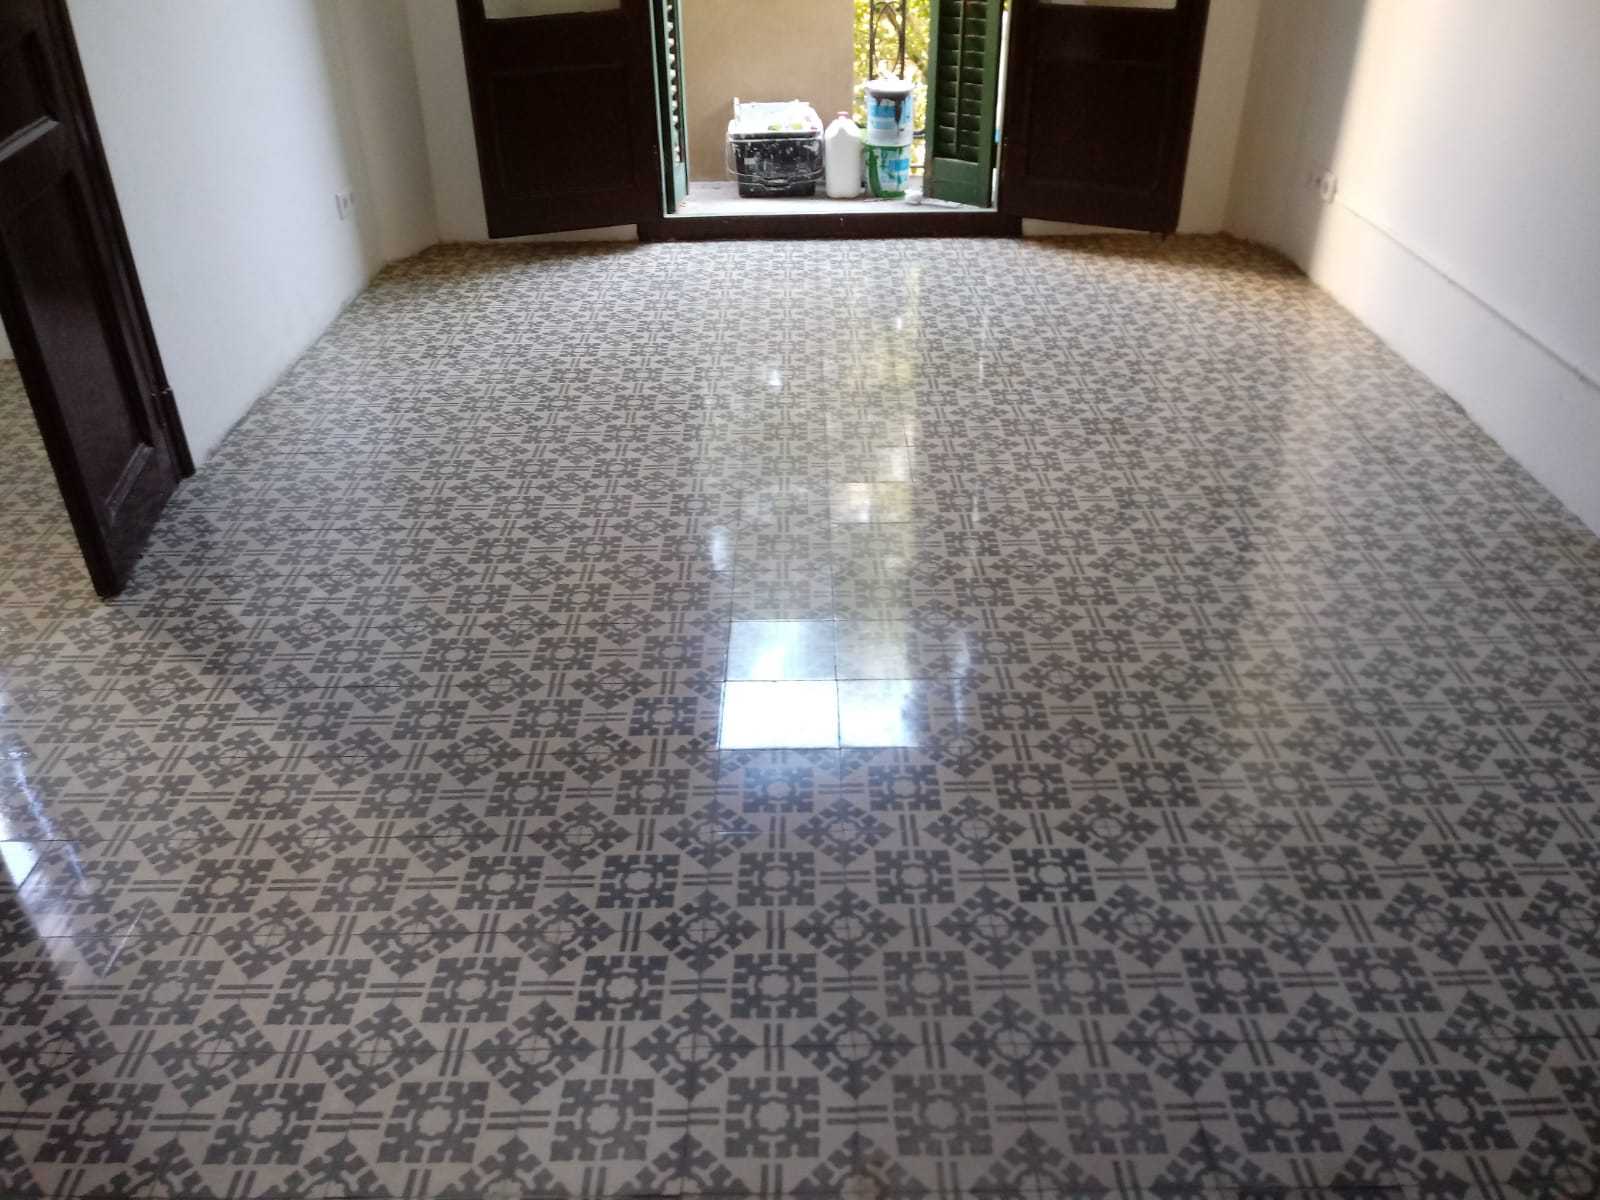 pulido pavimentos mosaicos hidráulicos